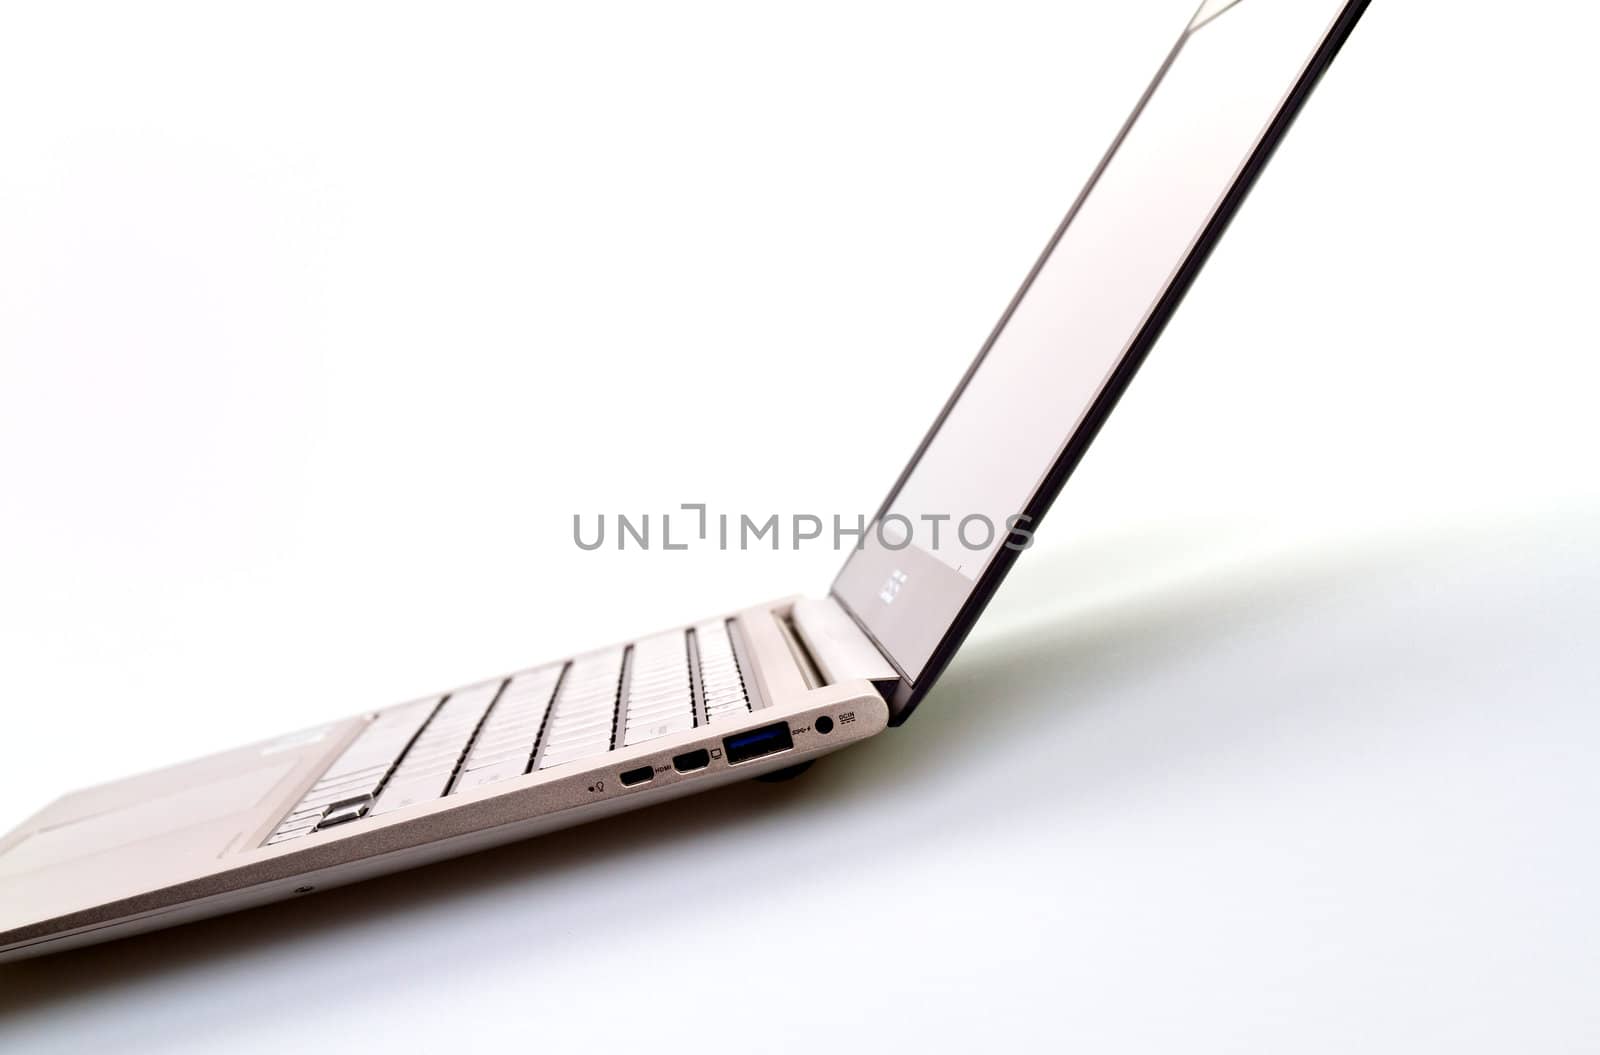 Ultrathin Laptop by azamshah72